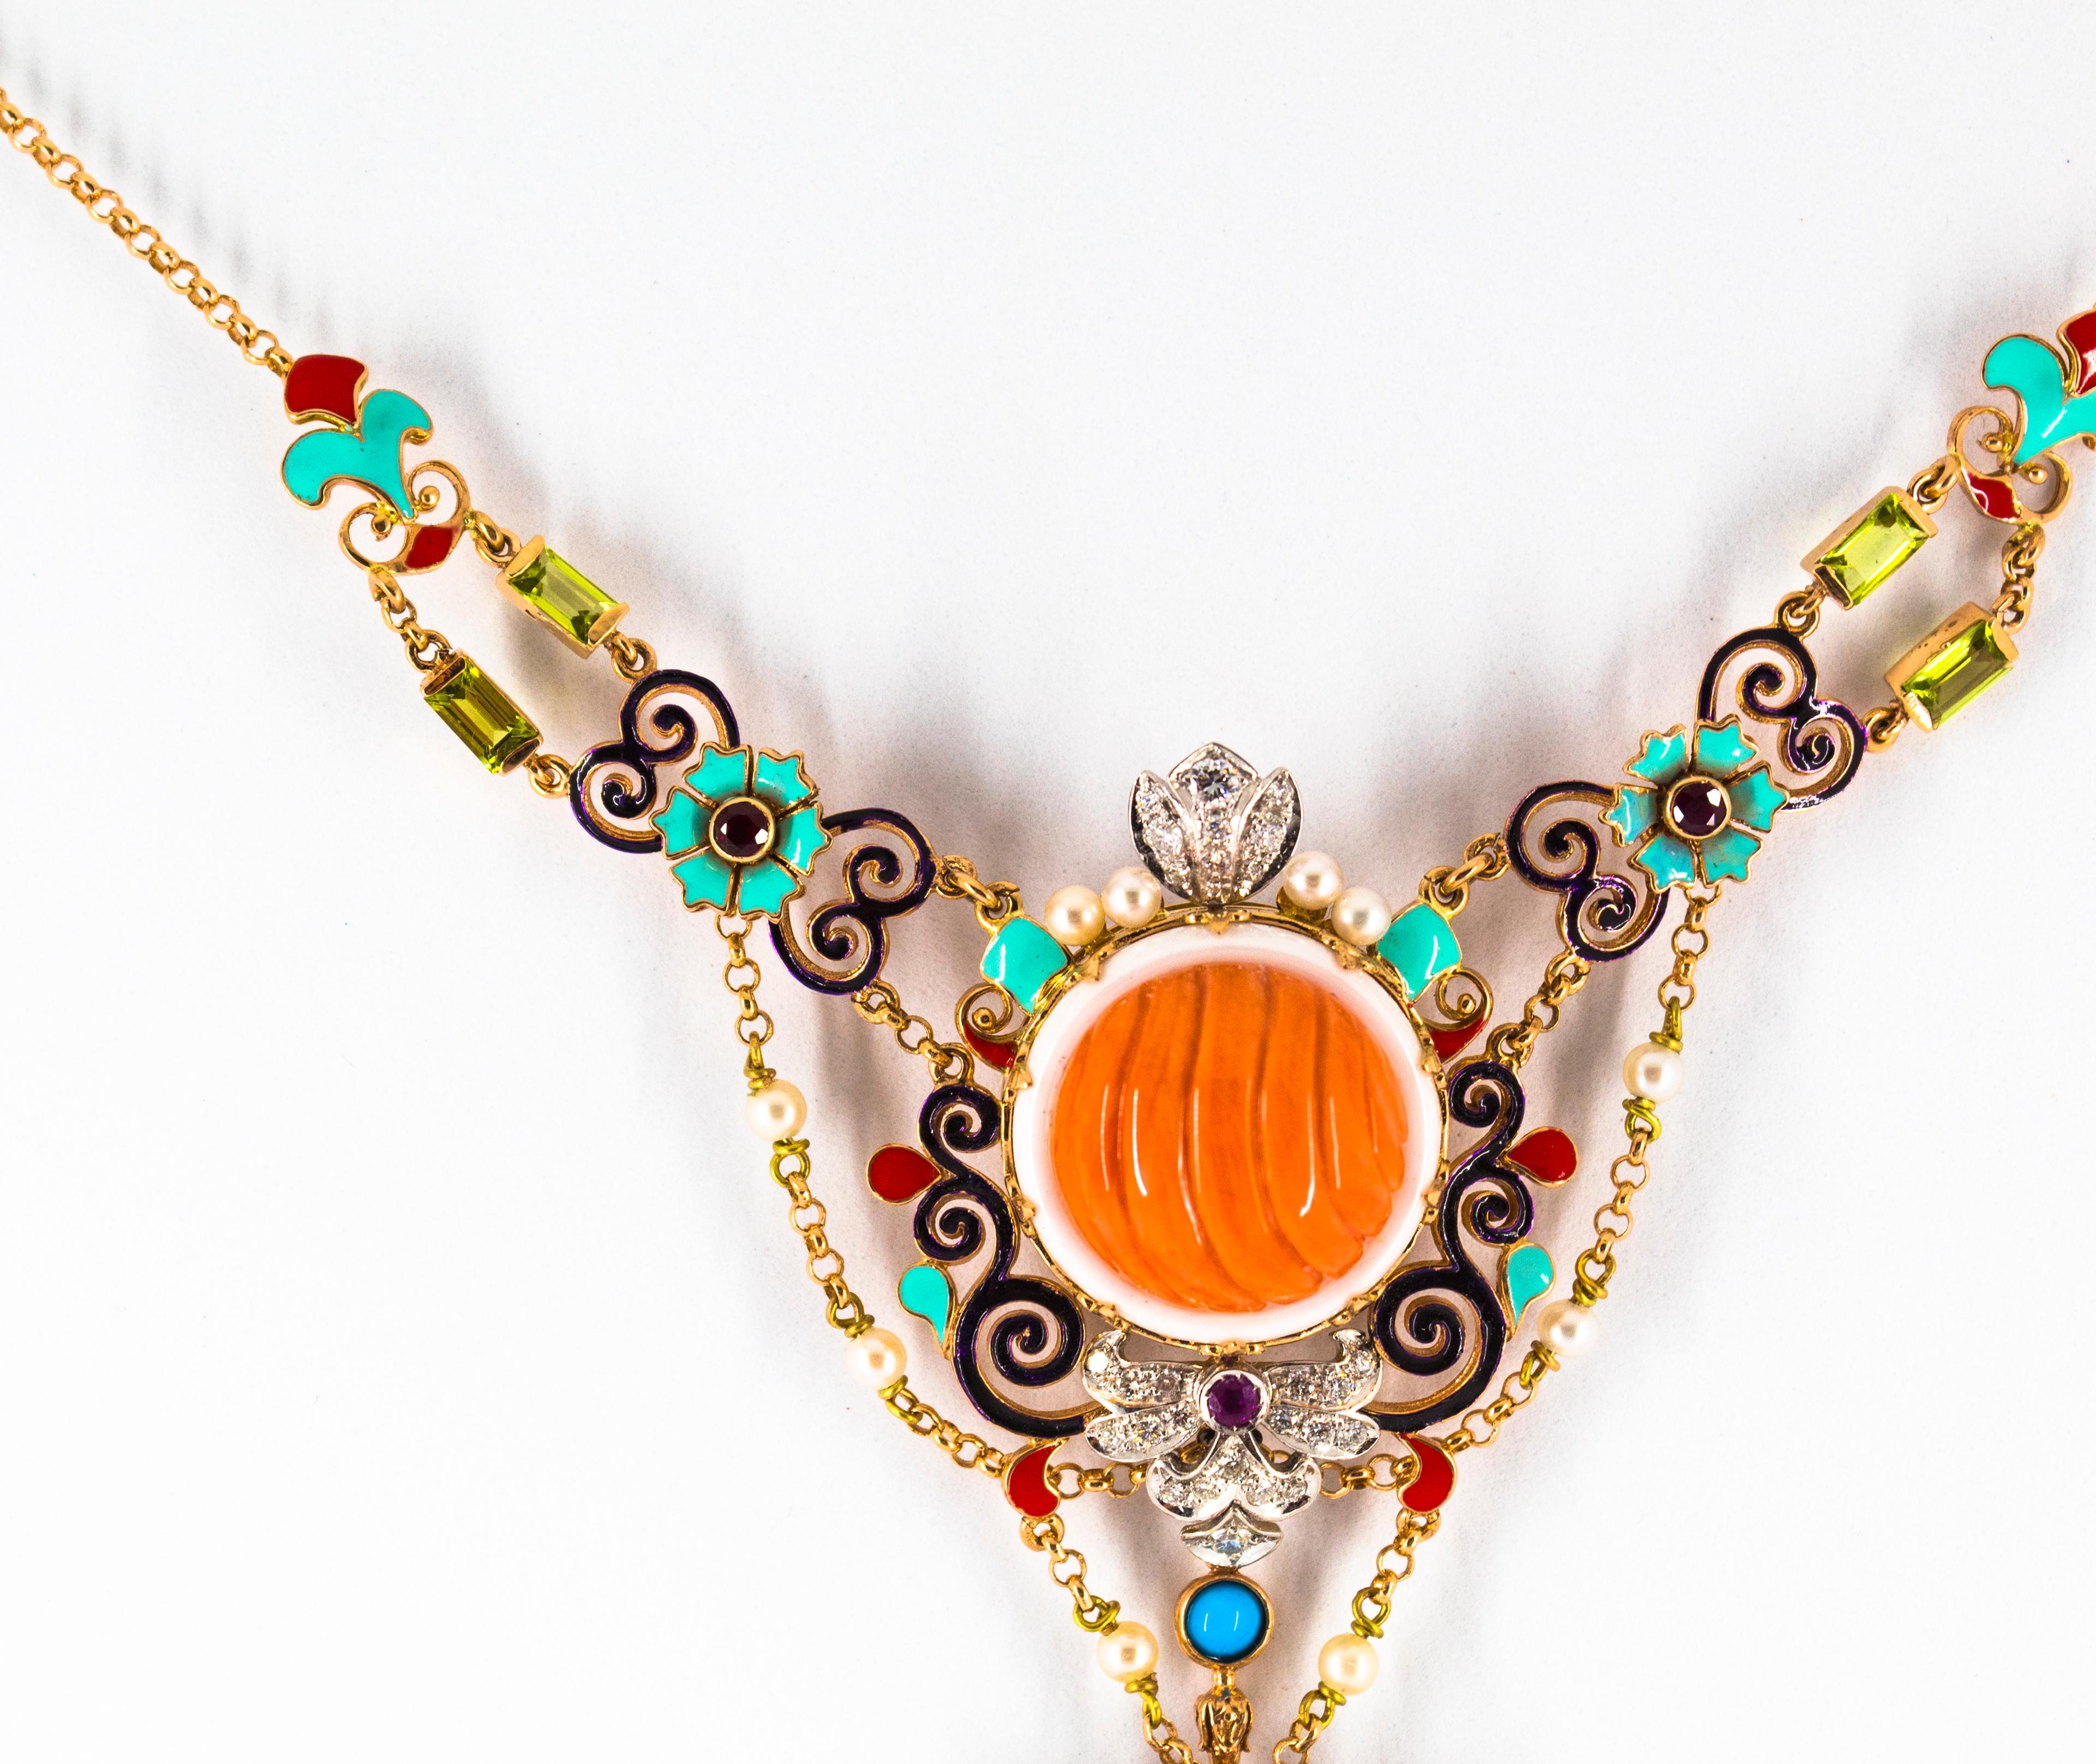 Taille brillant Collier Art Nouveau en or jaune avec diamants blancs, rubis, turquoises, corail, perles et émail